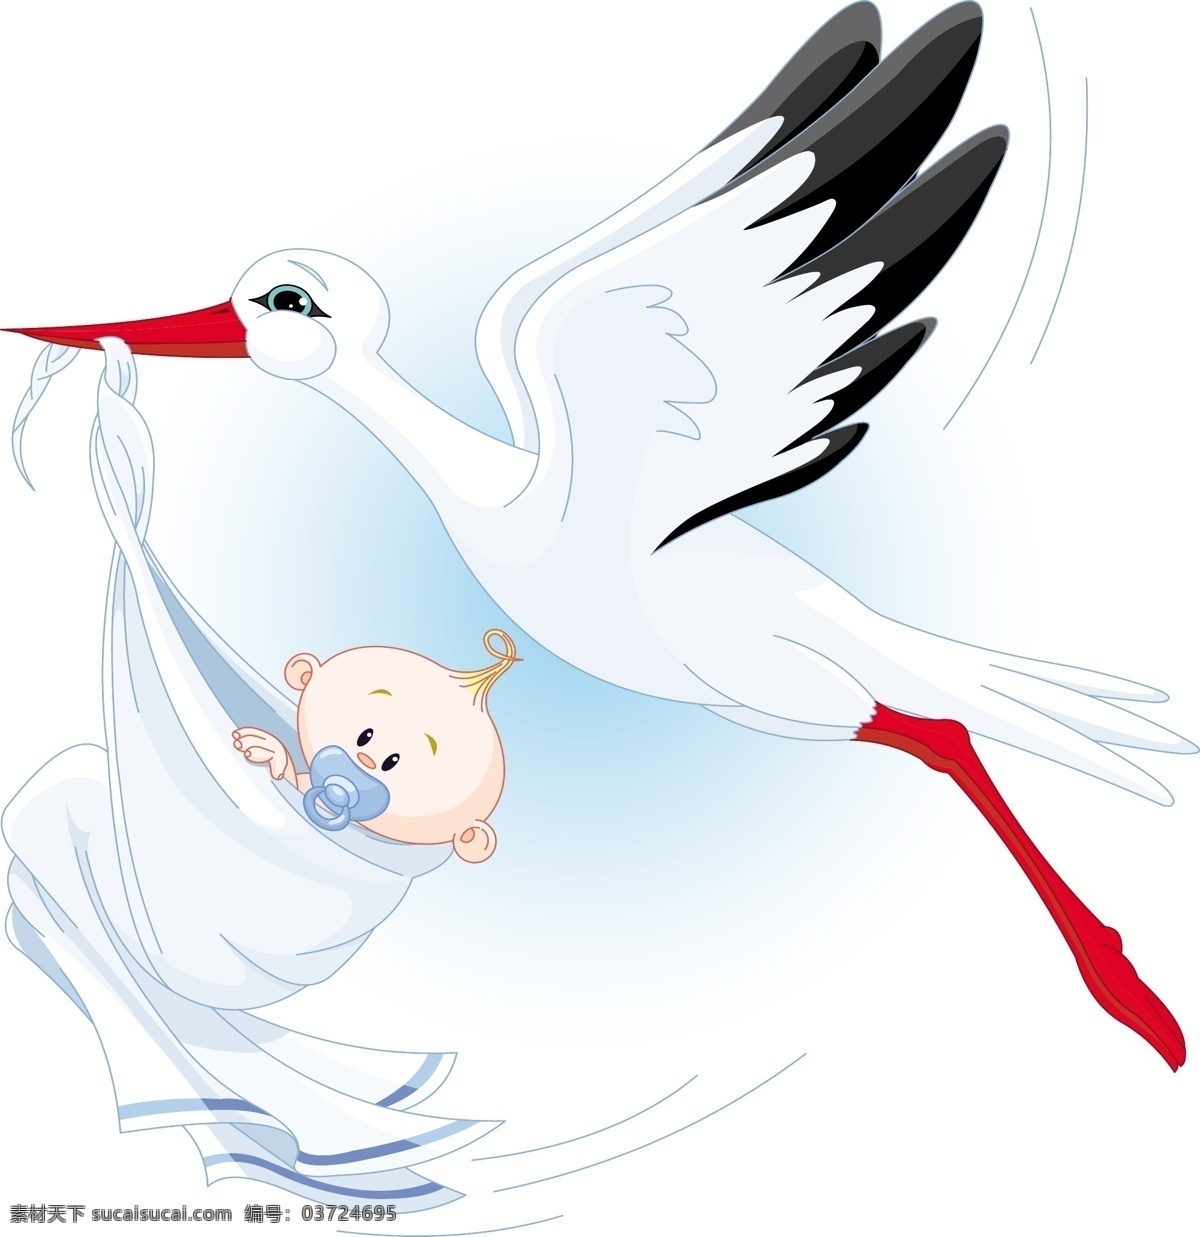 鹤 飞 一个 可爱 宝宝 图案 背景 婴儿 婴儿车 鸟 携带 飞行 施托 奇鹳 白色